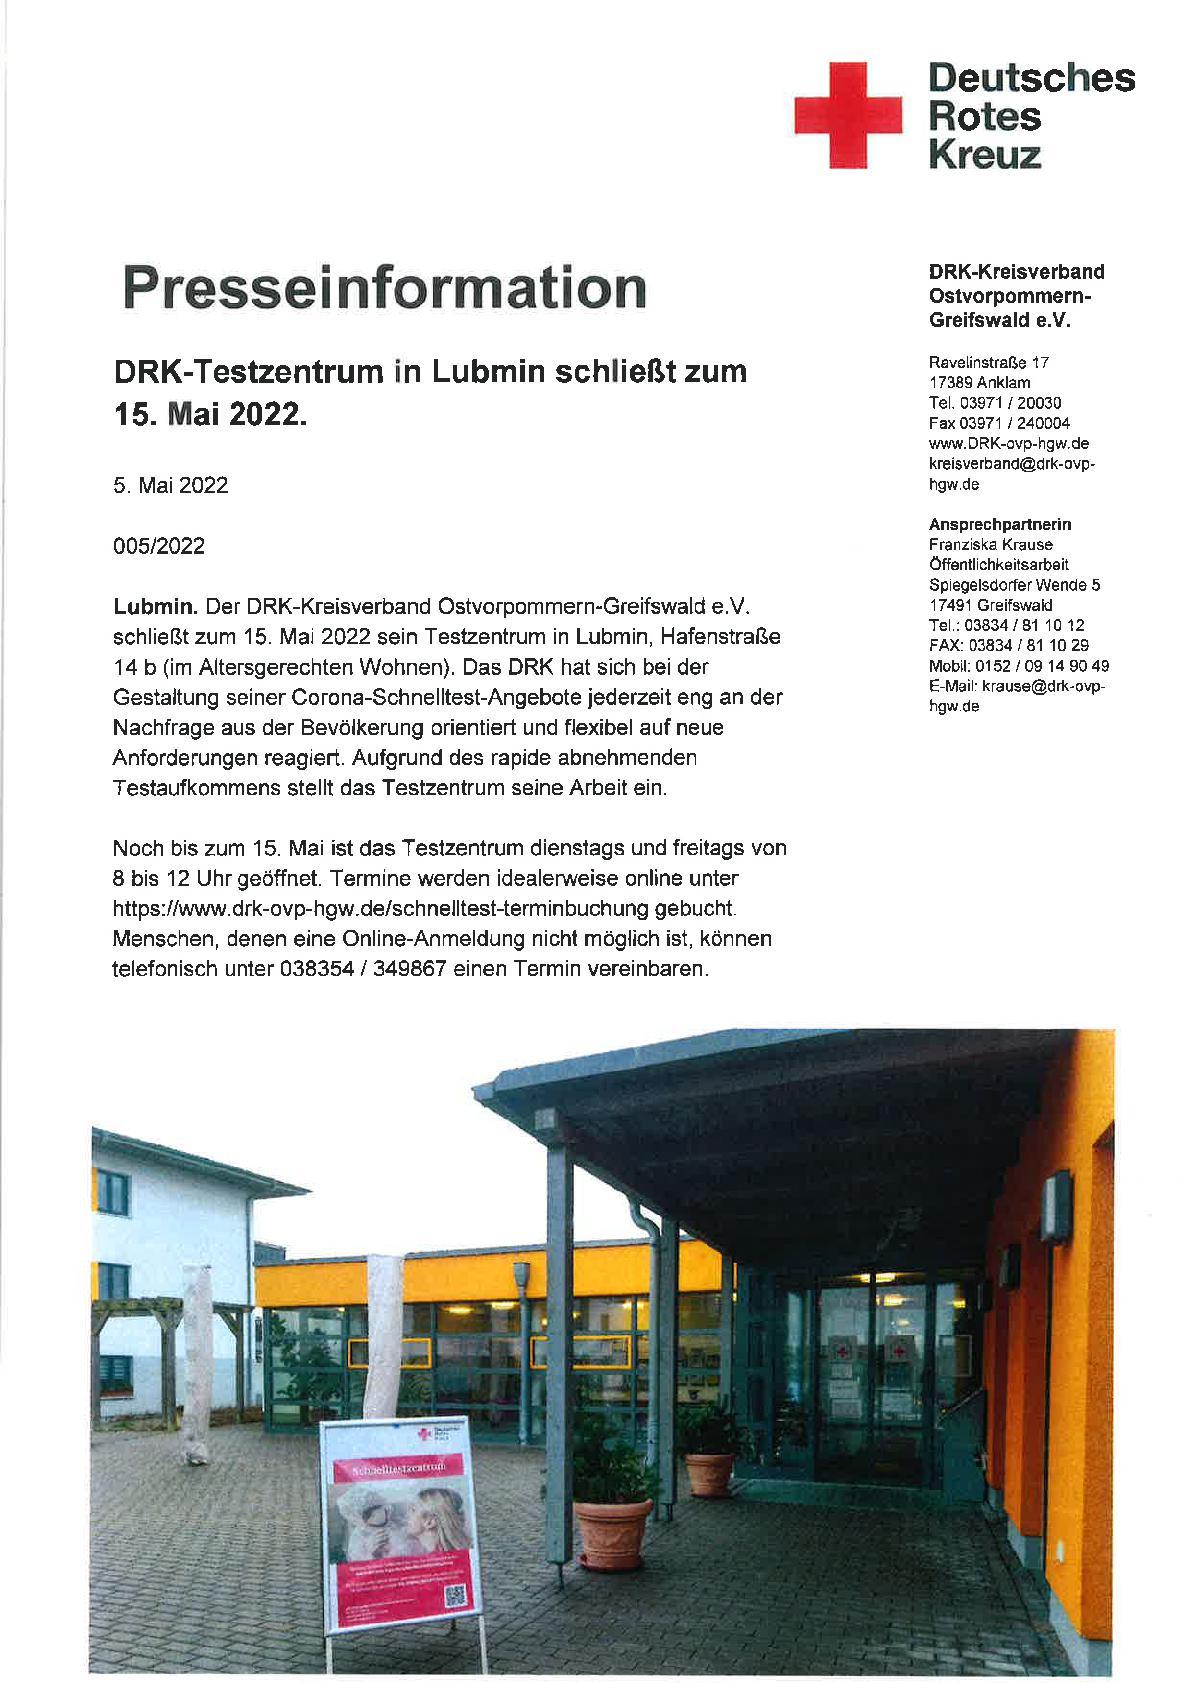 Presseinformation DRK-5.5.2022